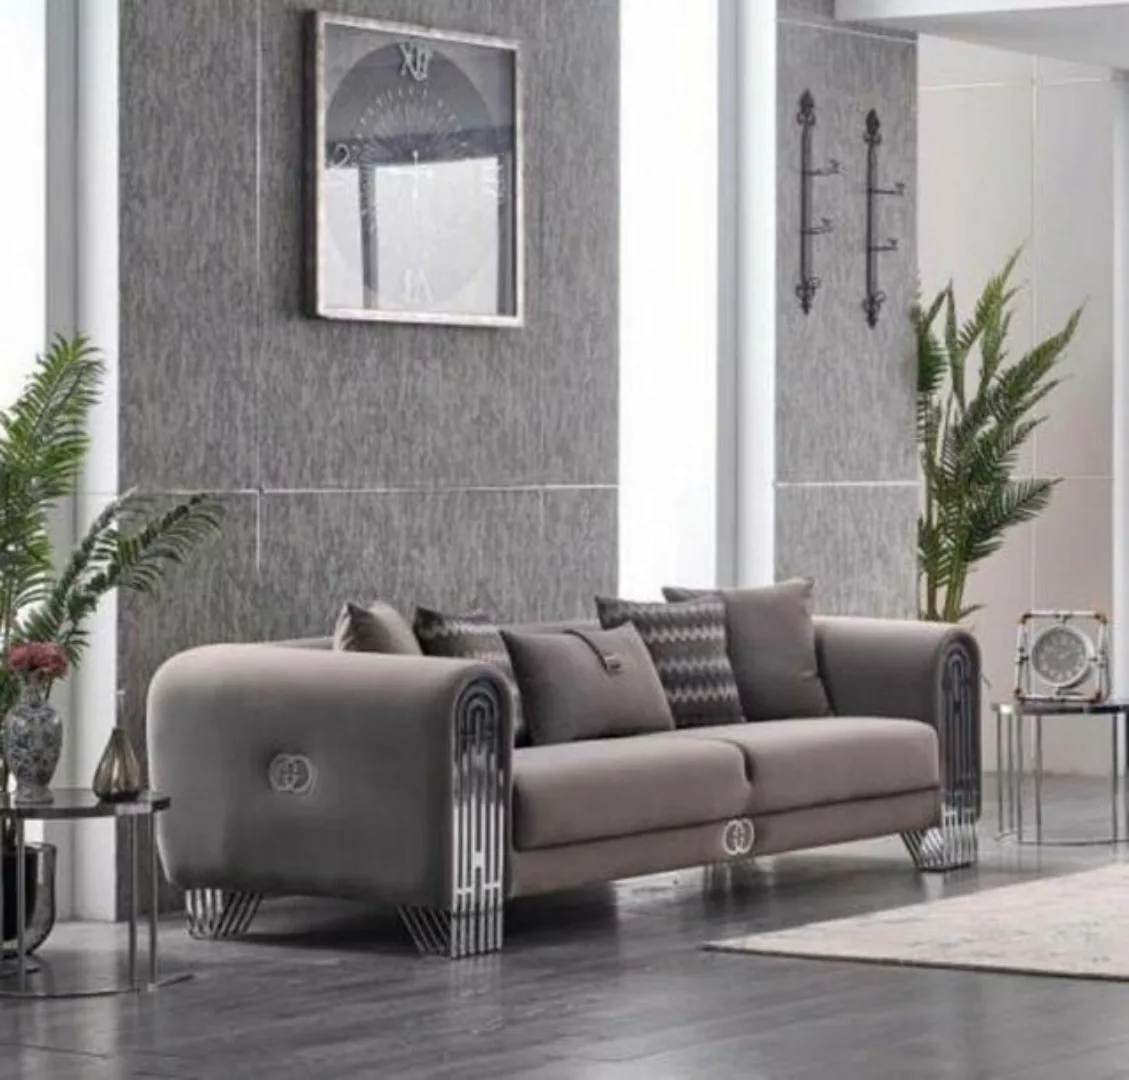 JVmoebel 3-Sitzer Elegante Stoffcouch Polster Sofa Möbel Wohnzimmer Möbel T günstig online kaufen